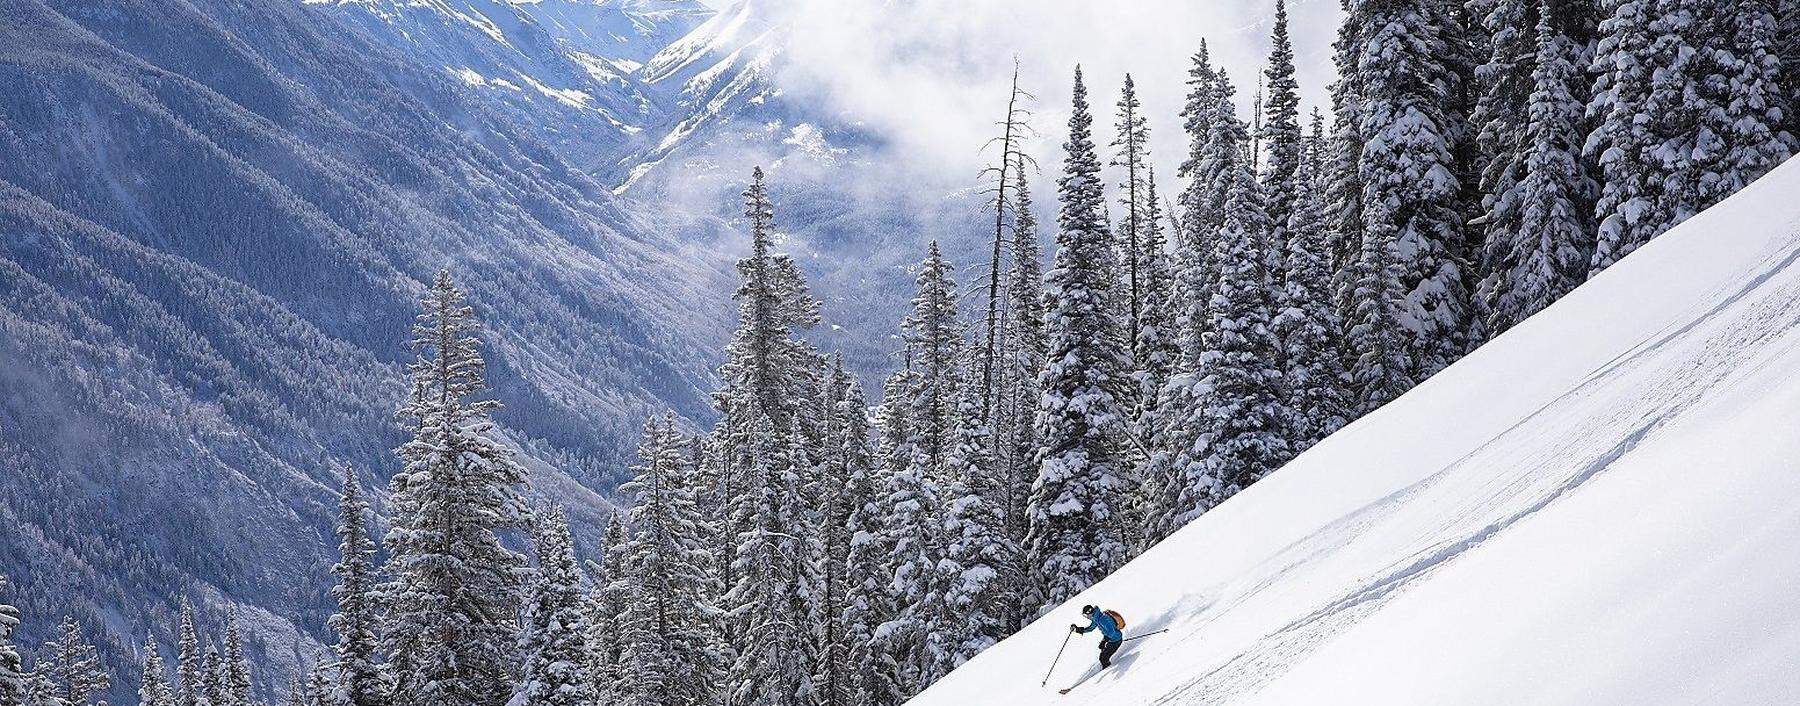 So haben passionierte Skifahrer die Berge eigentlich am liebsten: leer an Gästen und voller Powder. Kann man haben derzeit in Aspen/USA.